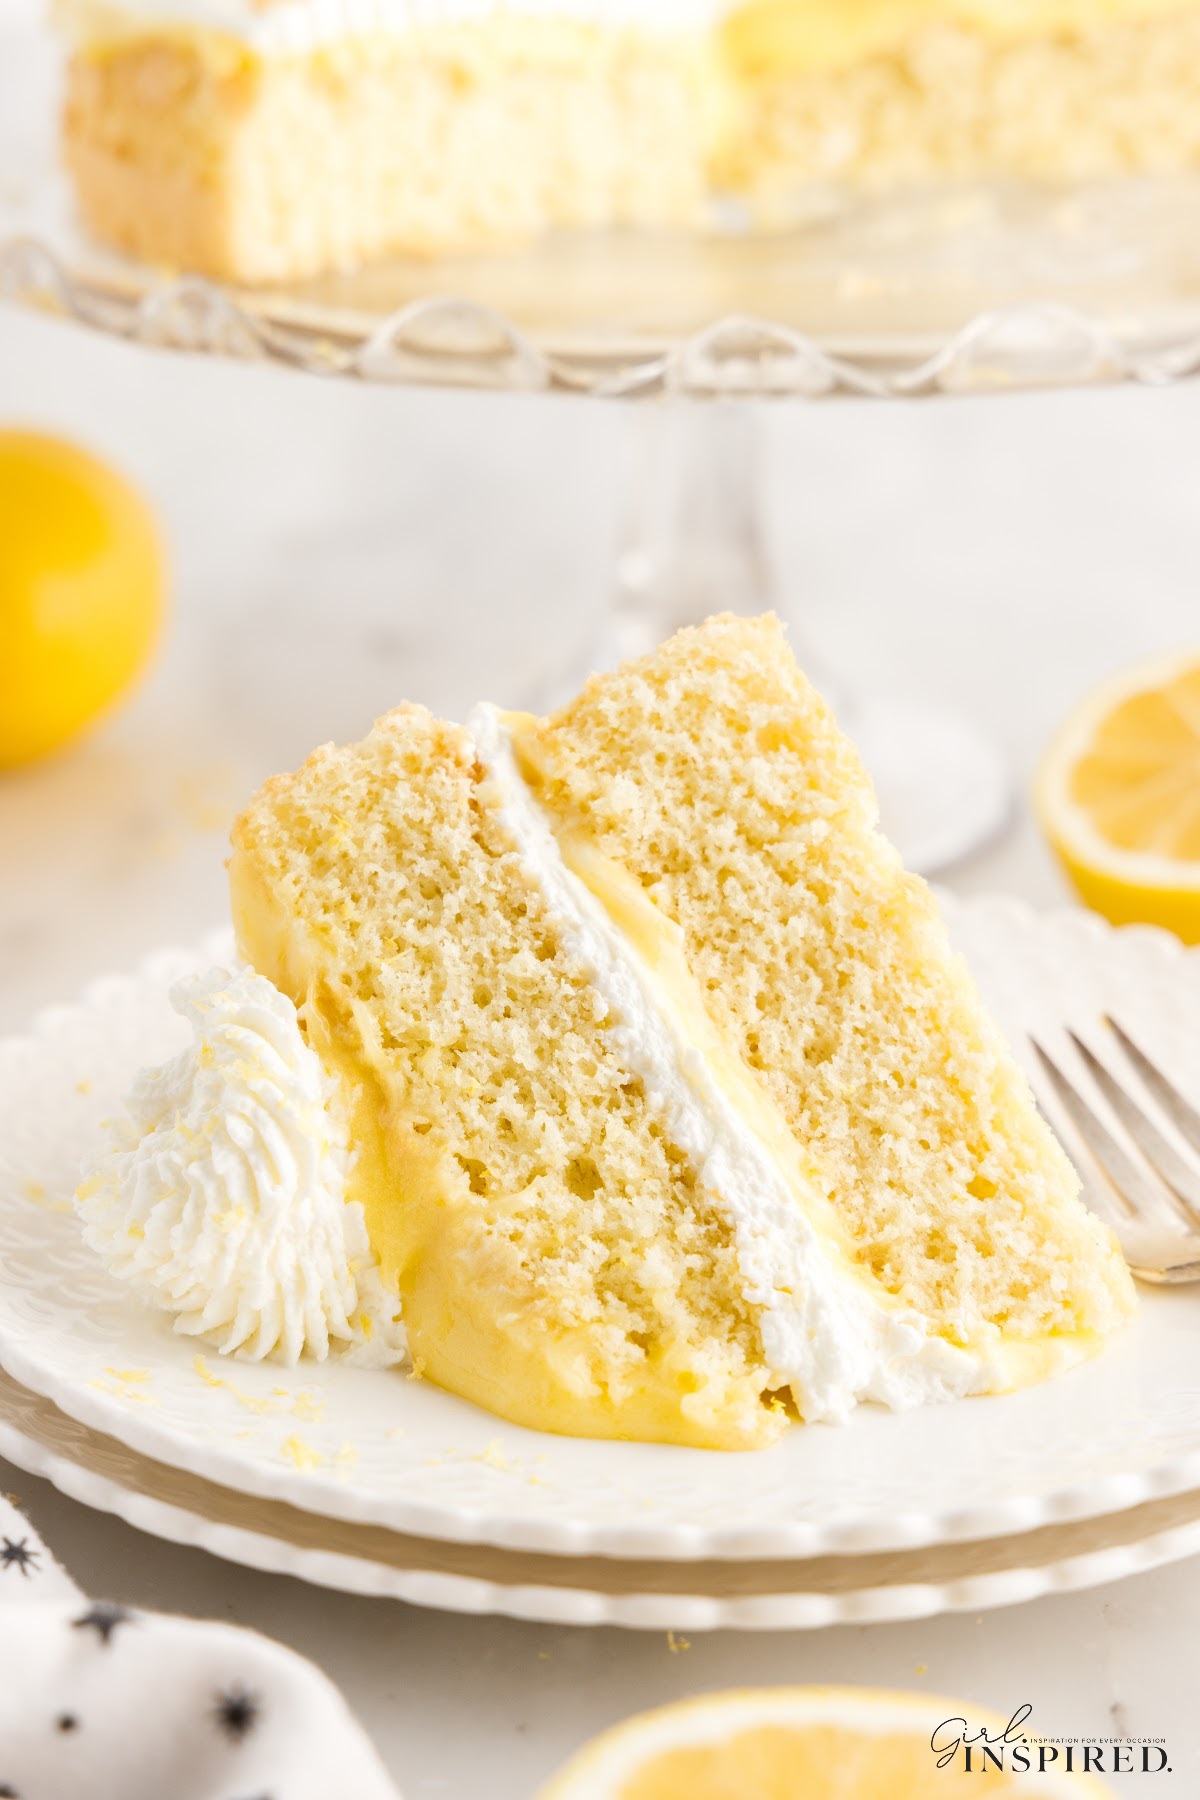 A slice of Lemon Sponge Cake.